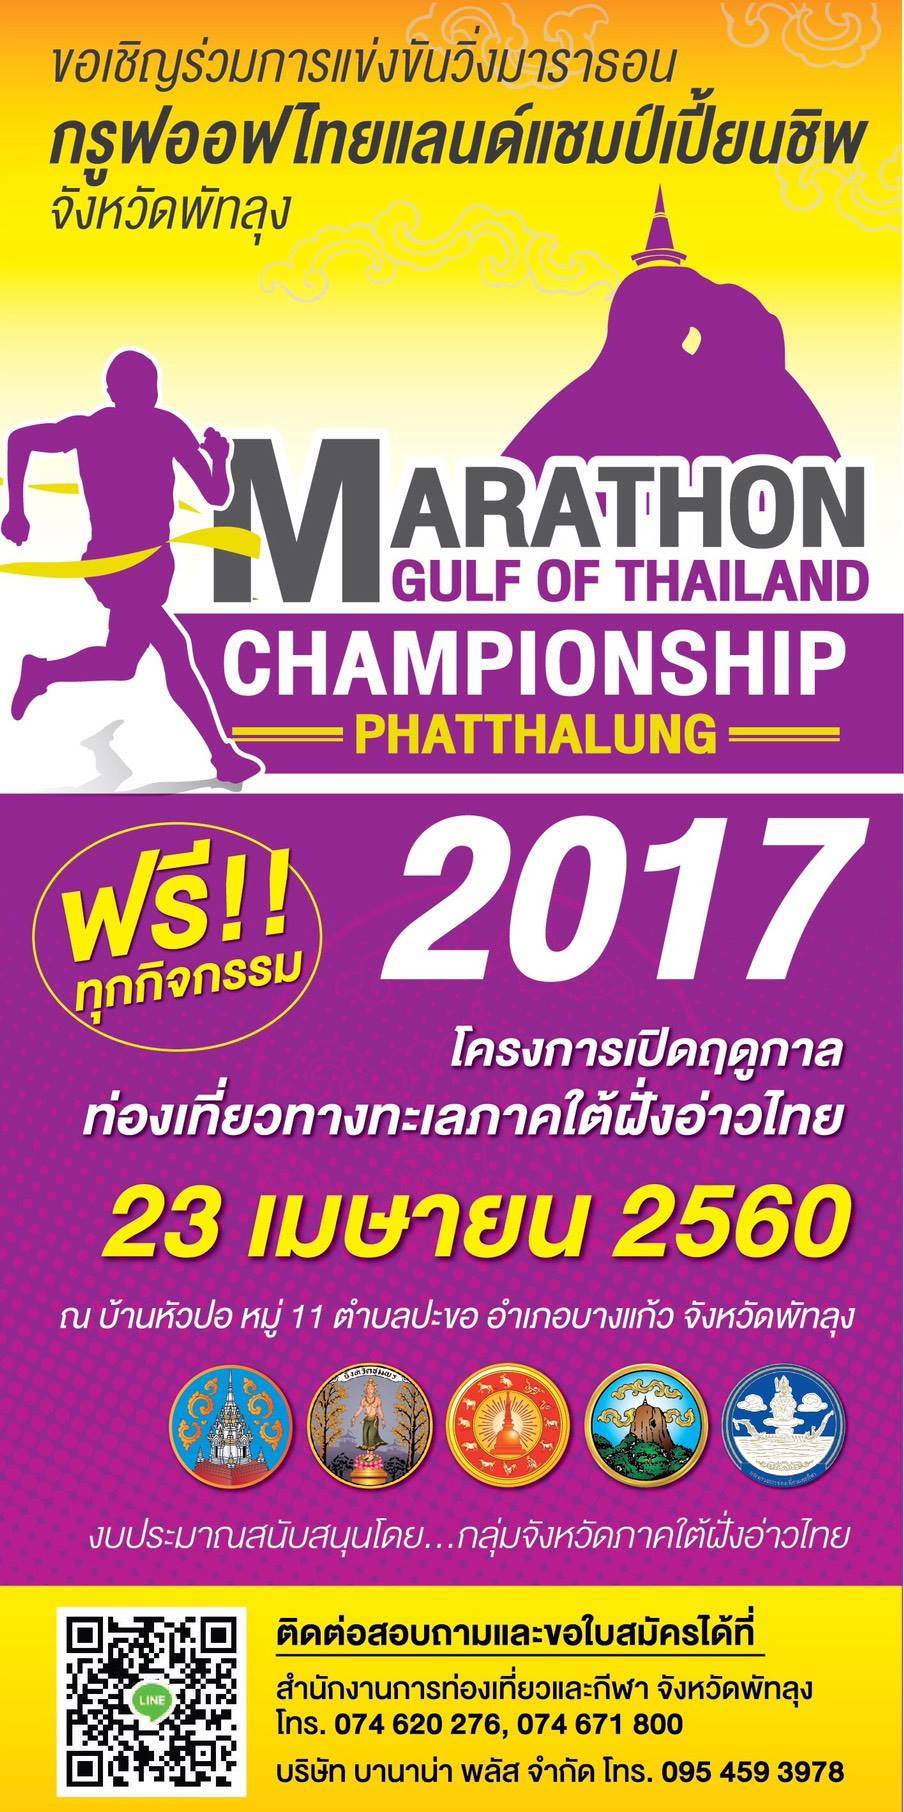 Marathon Gulf of Thailand Championship Phatthalung